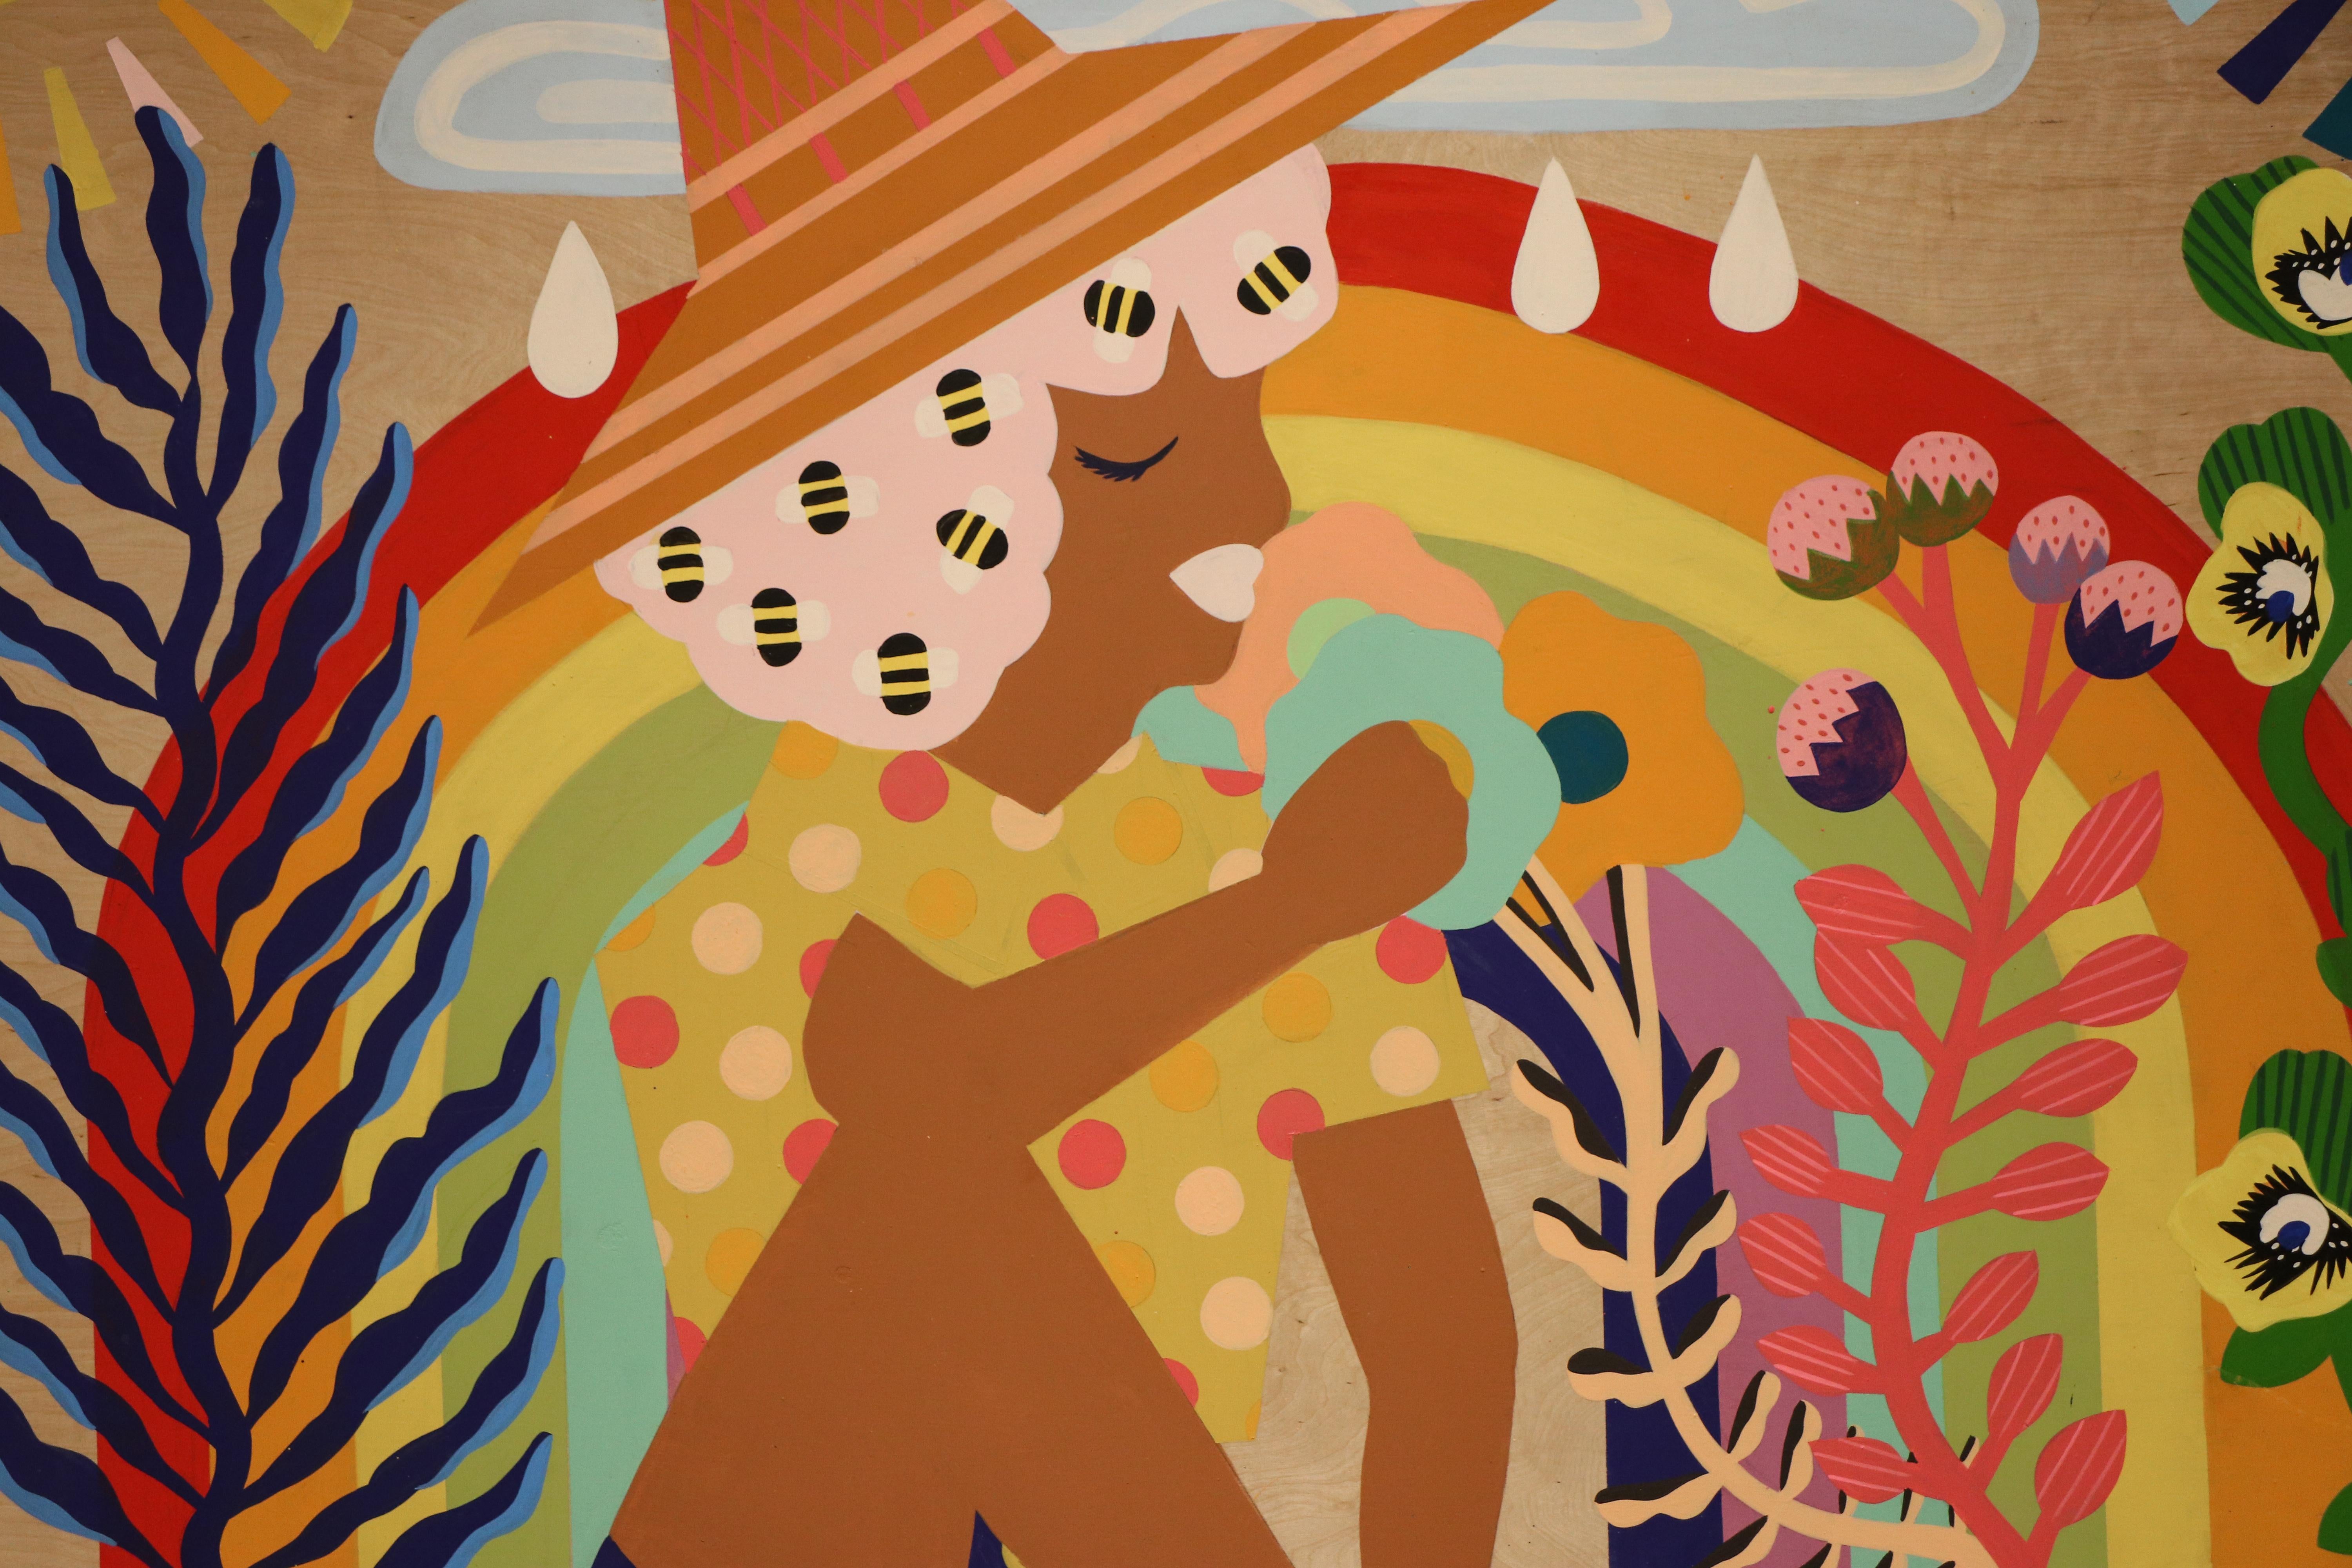 Mother Nature II - Stacy Kiehl - 48 x 48 - Acrylic Paint on Wood Panel, 2020 3